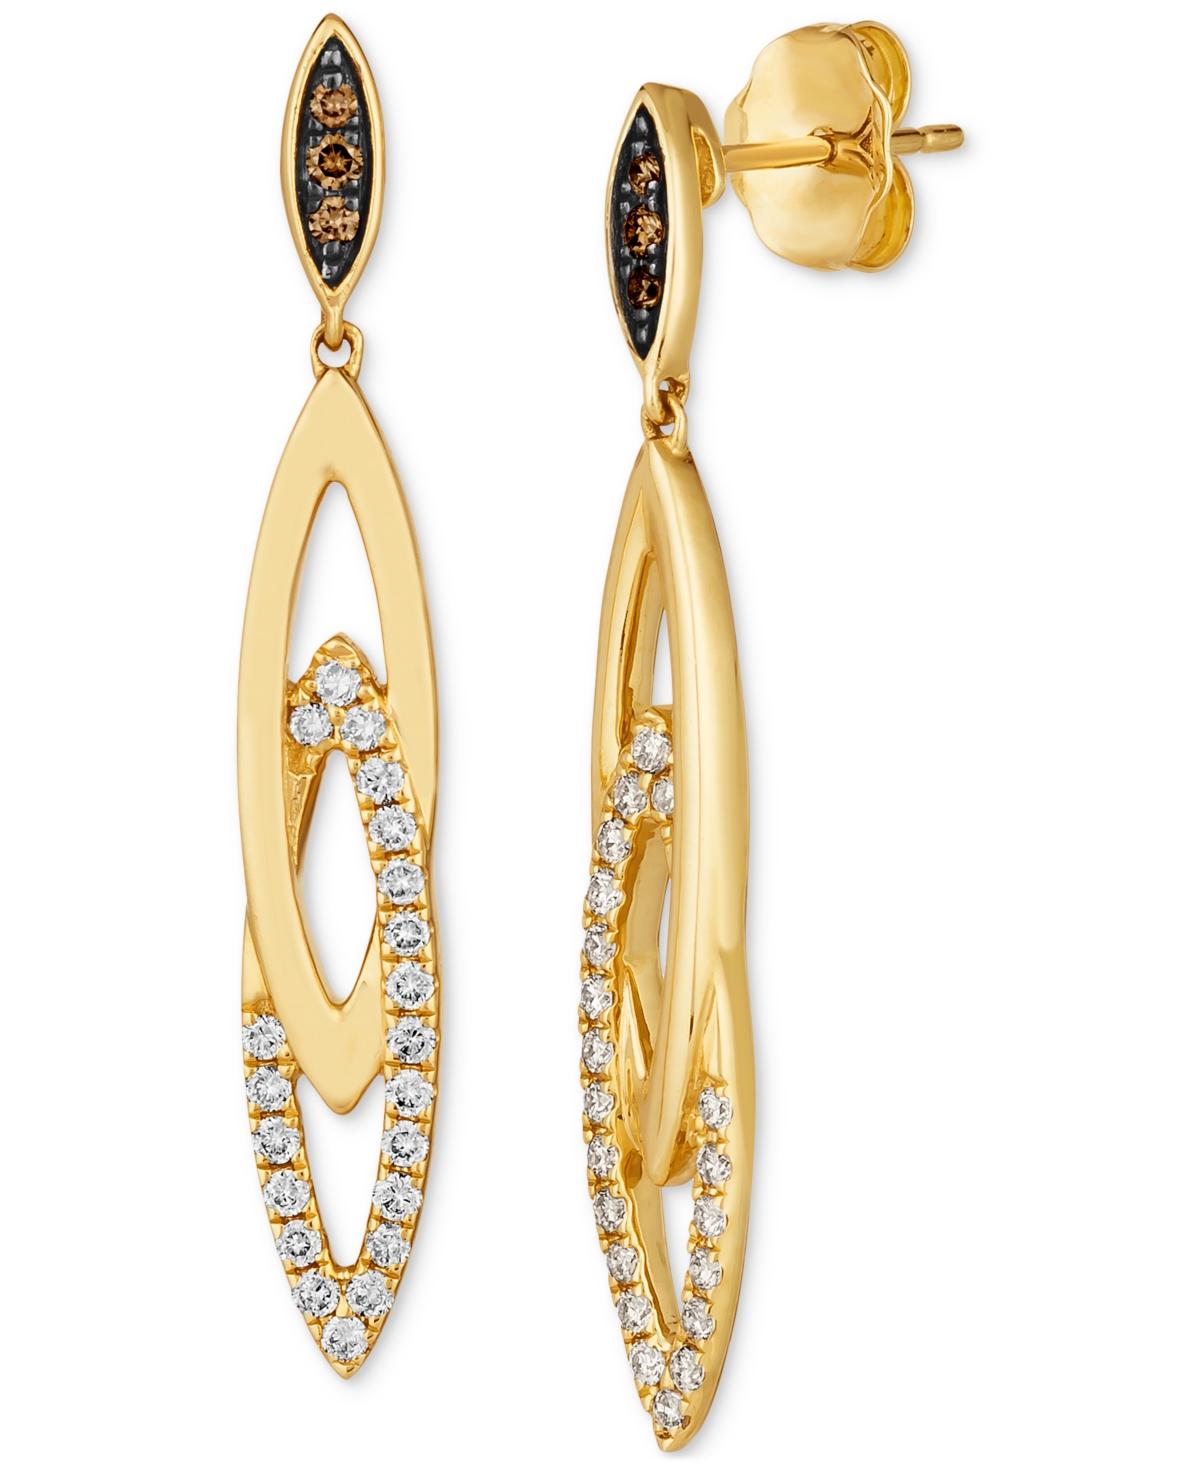 Nude Diamond & Chocolate Diamond Navette Drop Earrings (1/3 ct. t.w.) in 14k Gold - K Honey Gold Earrings